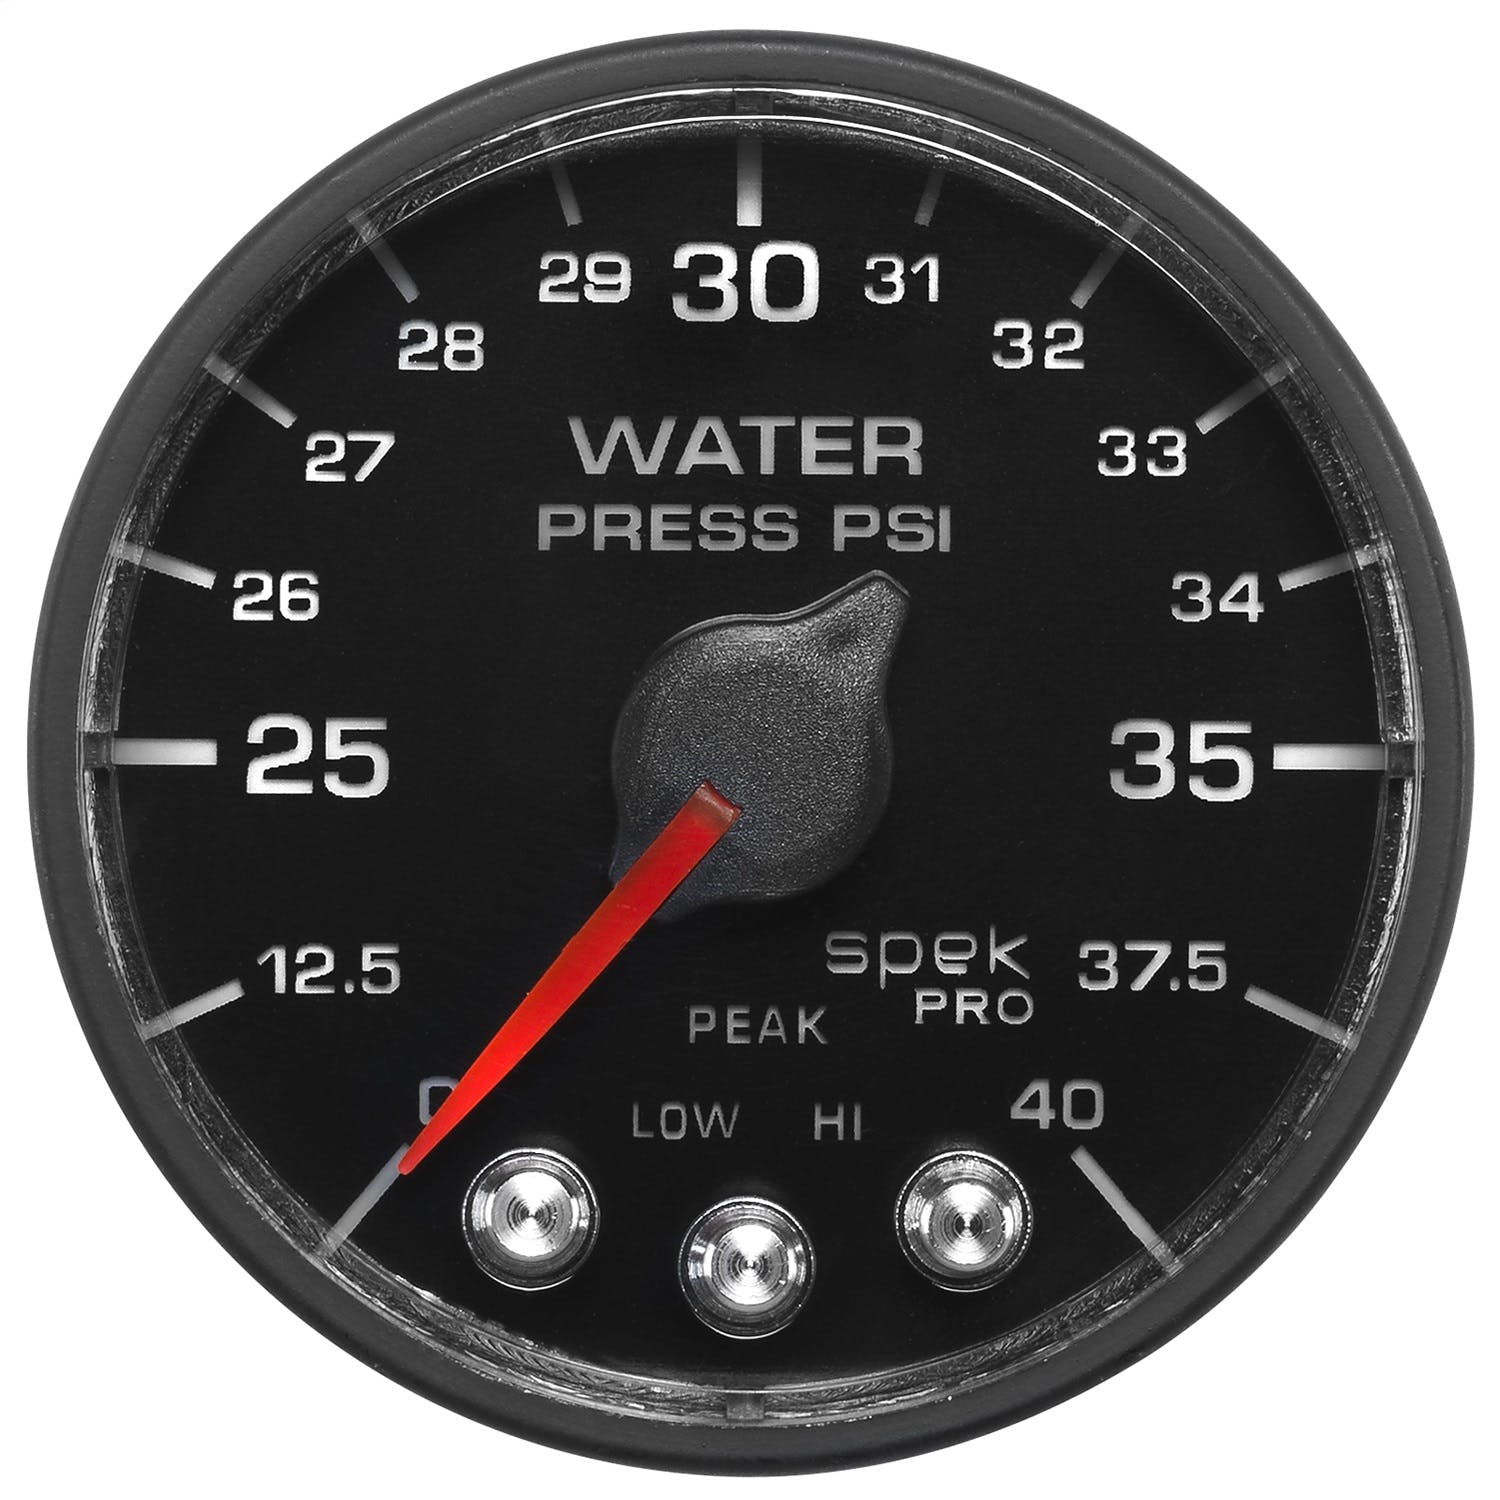 AutoMeter Products P551328-N1 Spek-Pro NASCAR Water Pressure Gauge